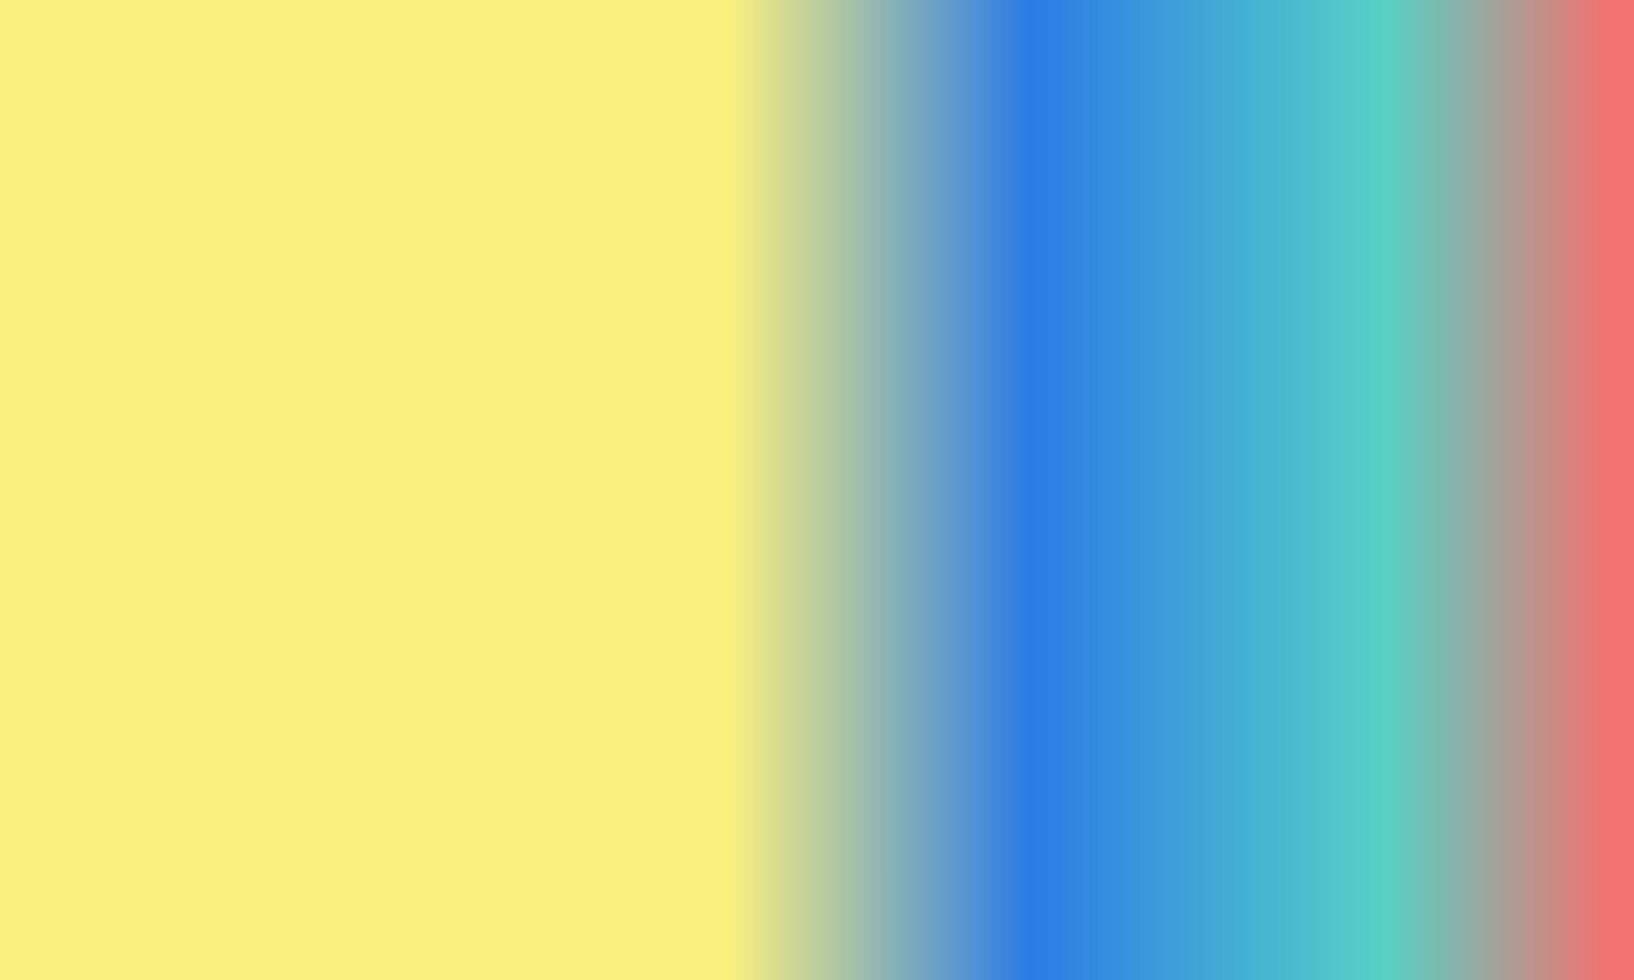 ontwerp gemakkelijk cyaan, rood, geel en blauw helling kleur illustratie achtergrond foto